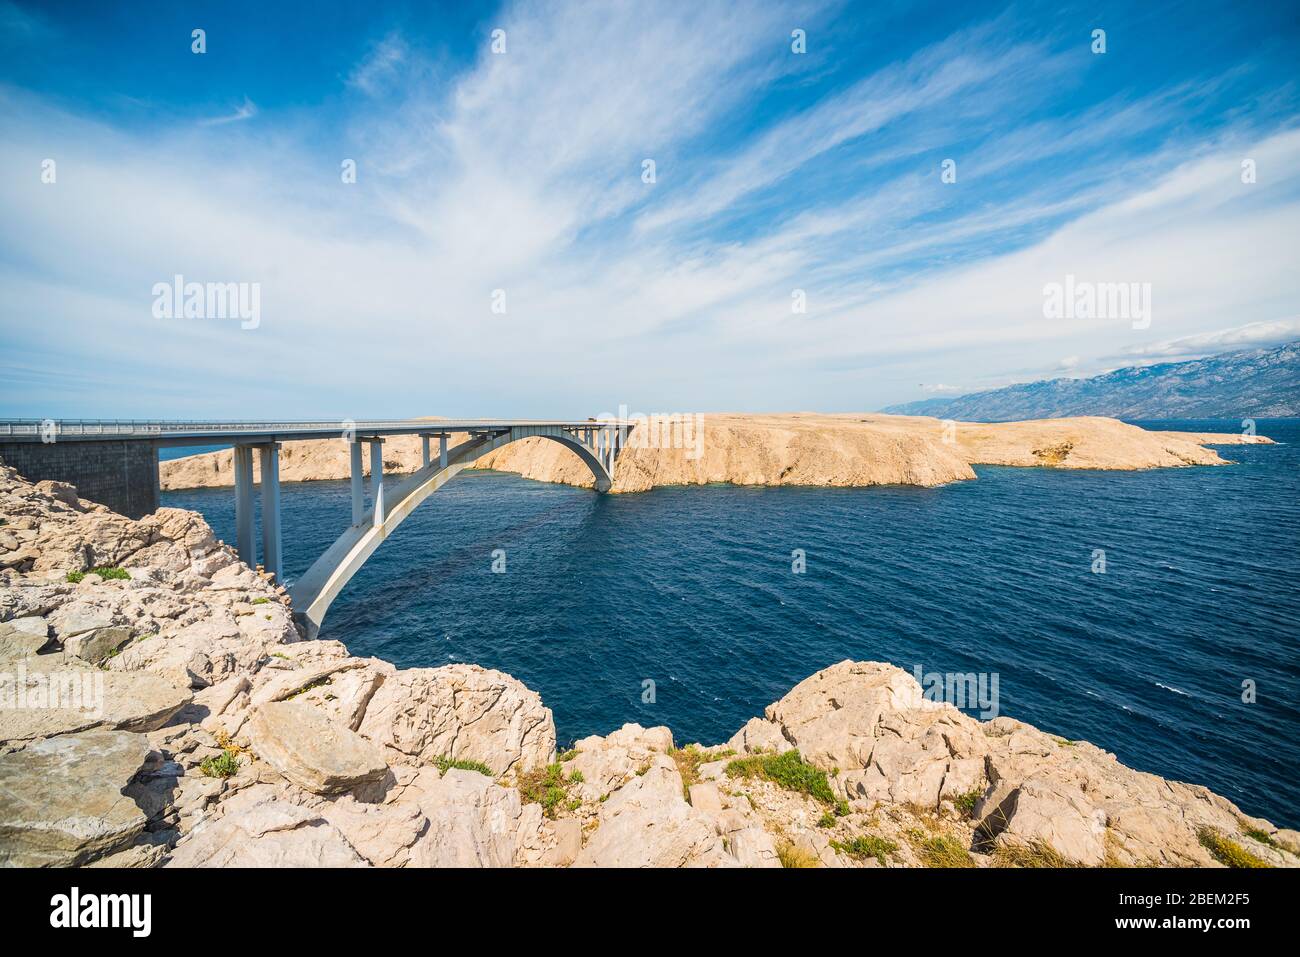 Pont de Pag - pont de Paski qui relie l'île de Pag au continent croate au-dessus d'un détroit de la mer Adriatique appelé Ljubacka vrata Banque D'Images